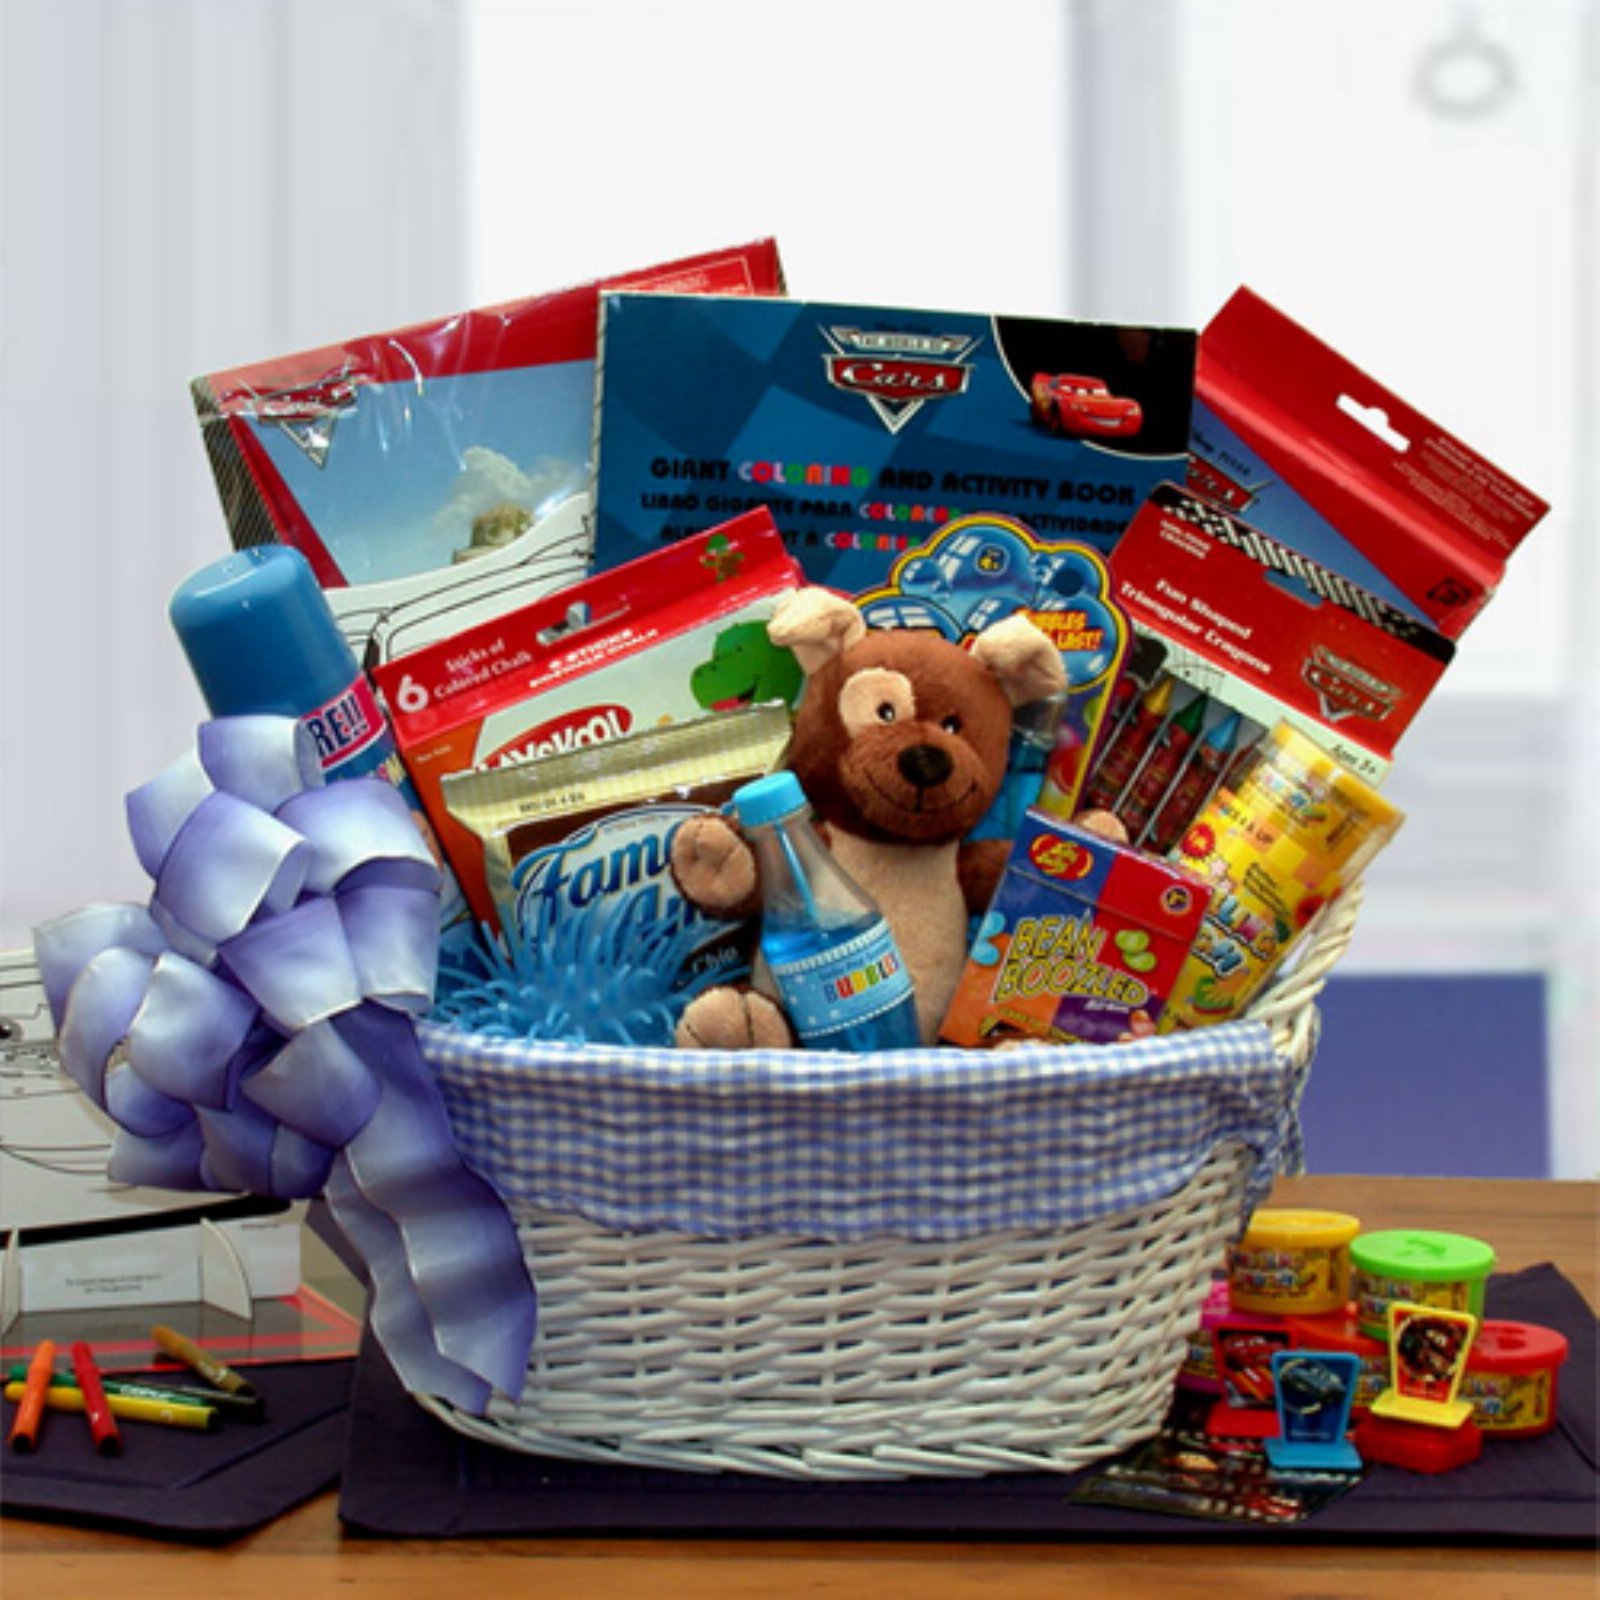 Gift Basket Drop Shipping Disney Fun & Games Gift Basket - image 1 of 1